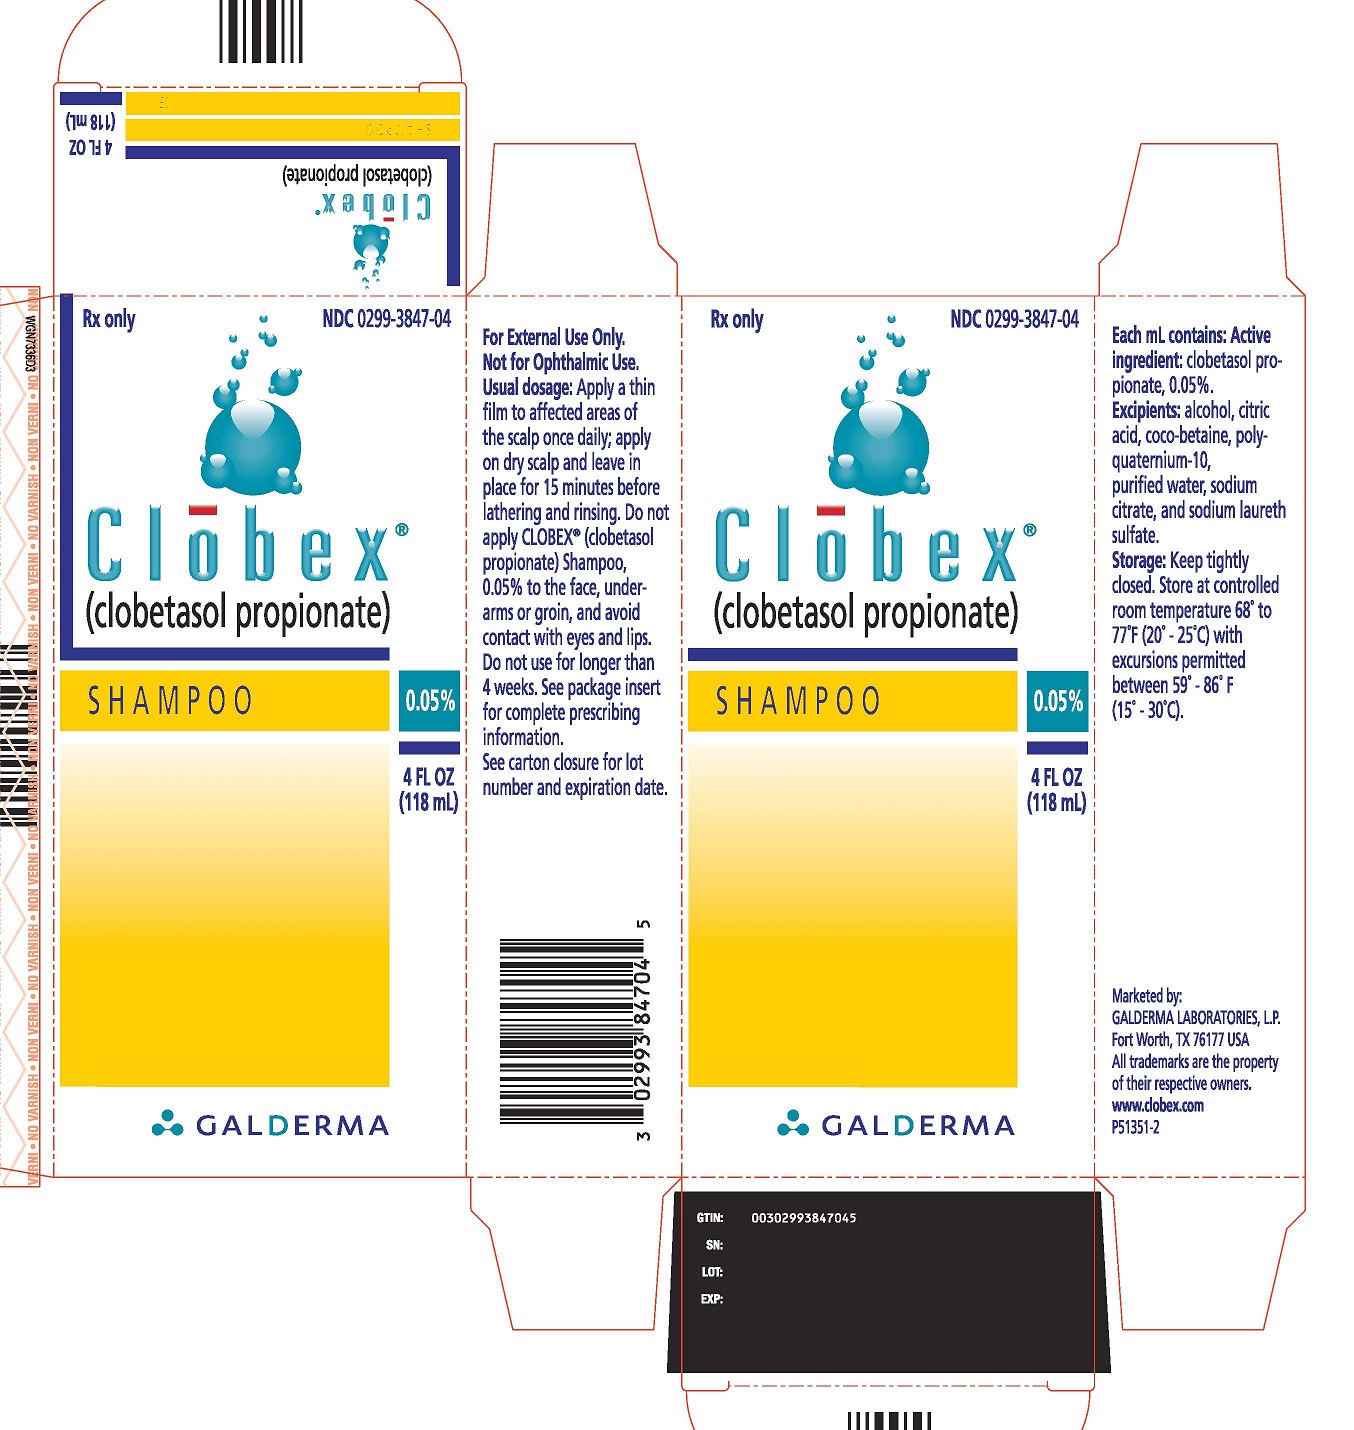 p51351-2-clobex-shampoo-carton-image